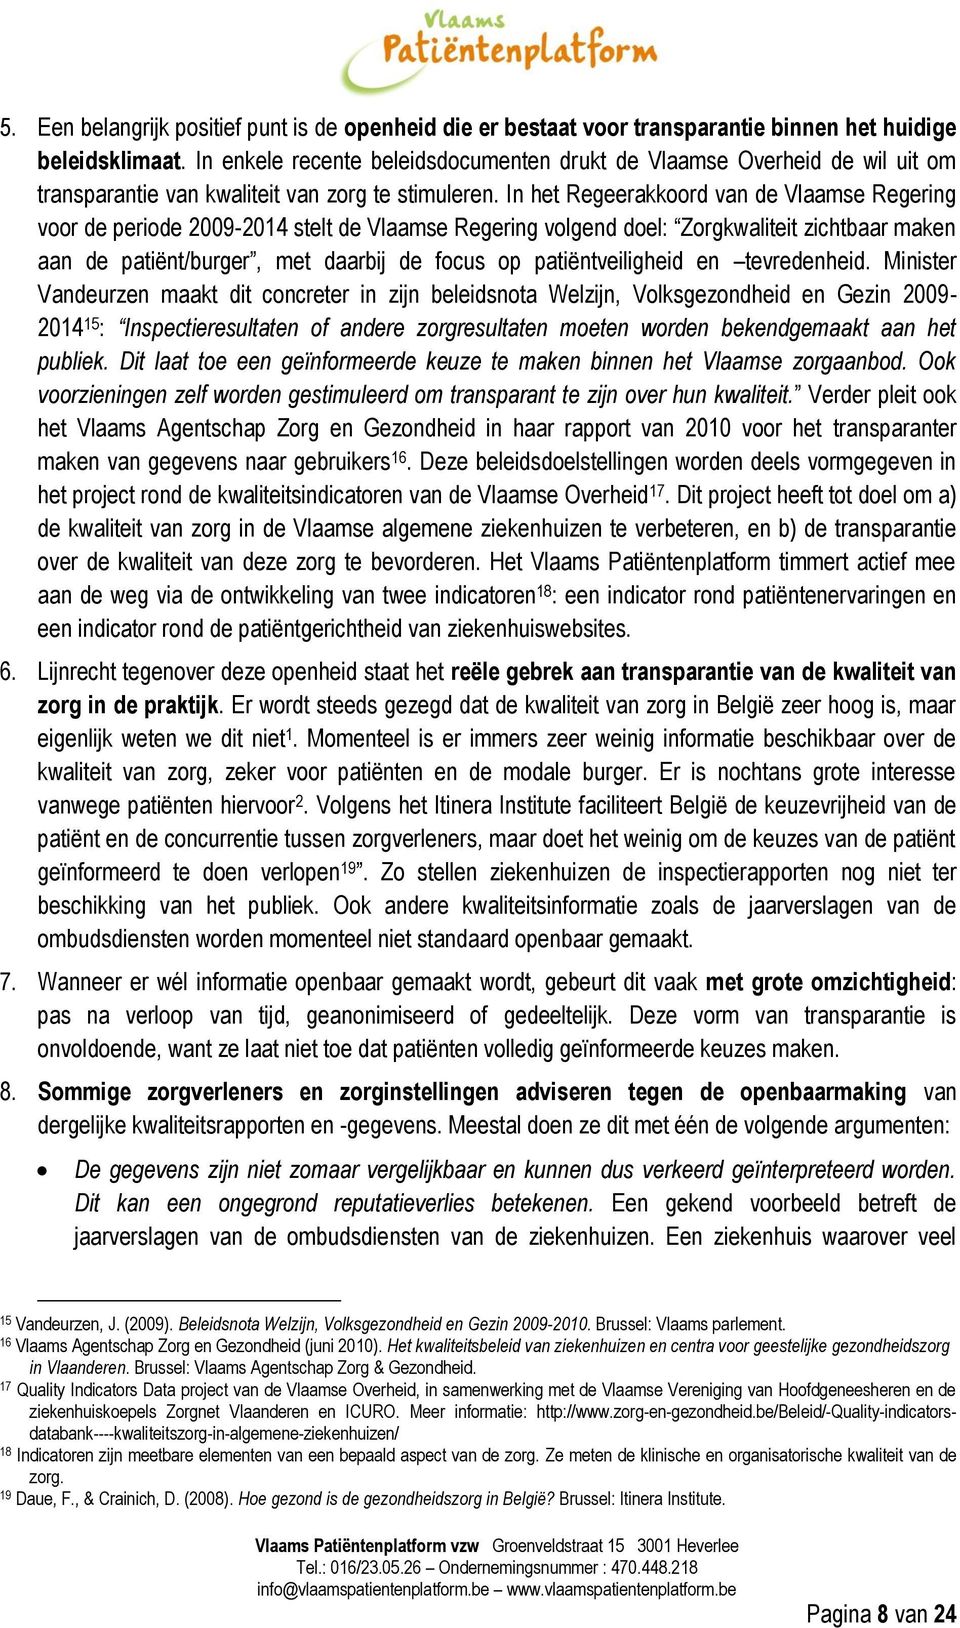 In het Regeerakkoord van de Vlaamse Regering voor de periode 2009-2014 stelt de Vlaamse Regering volgend doel: Zorgkwaliteit zichtbaar maken aan de patiënt/burger, met daarbij de focus op